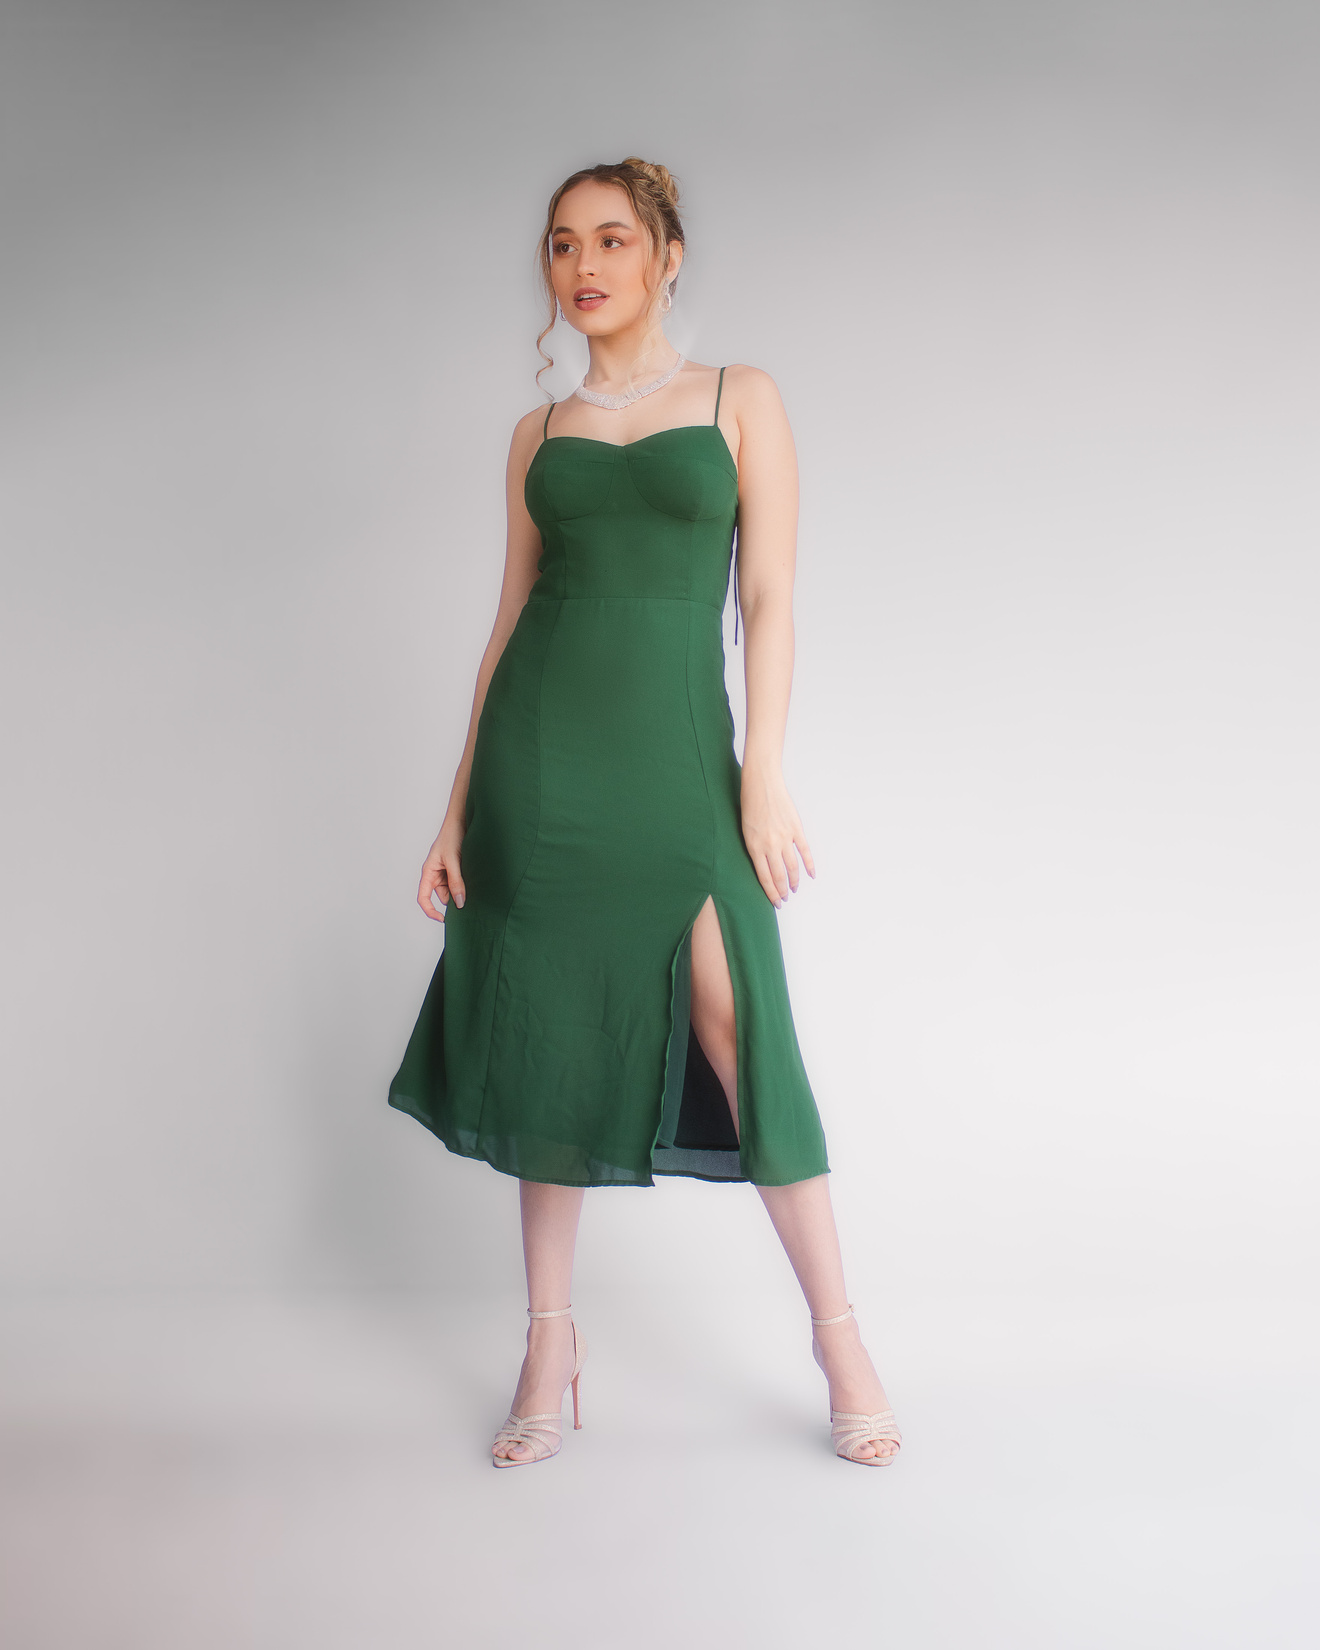 Model Wearing a Green Dress Looking Away